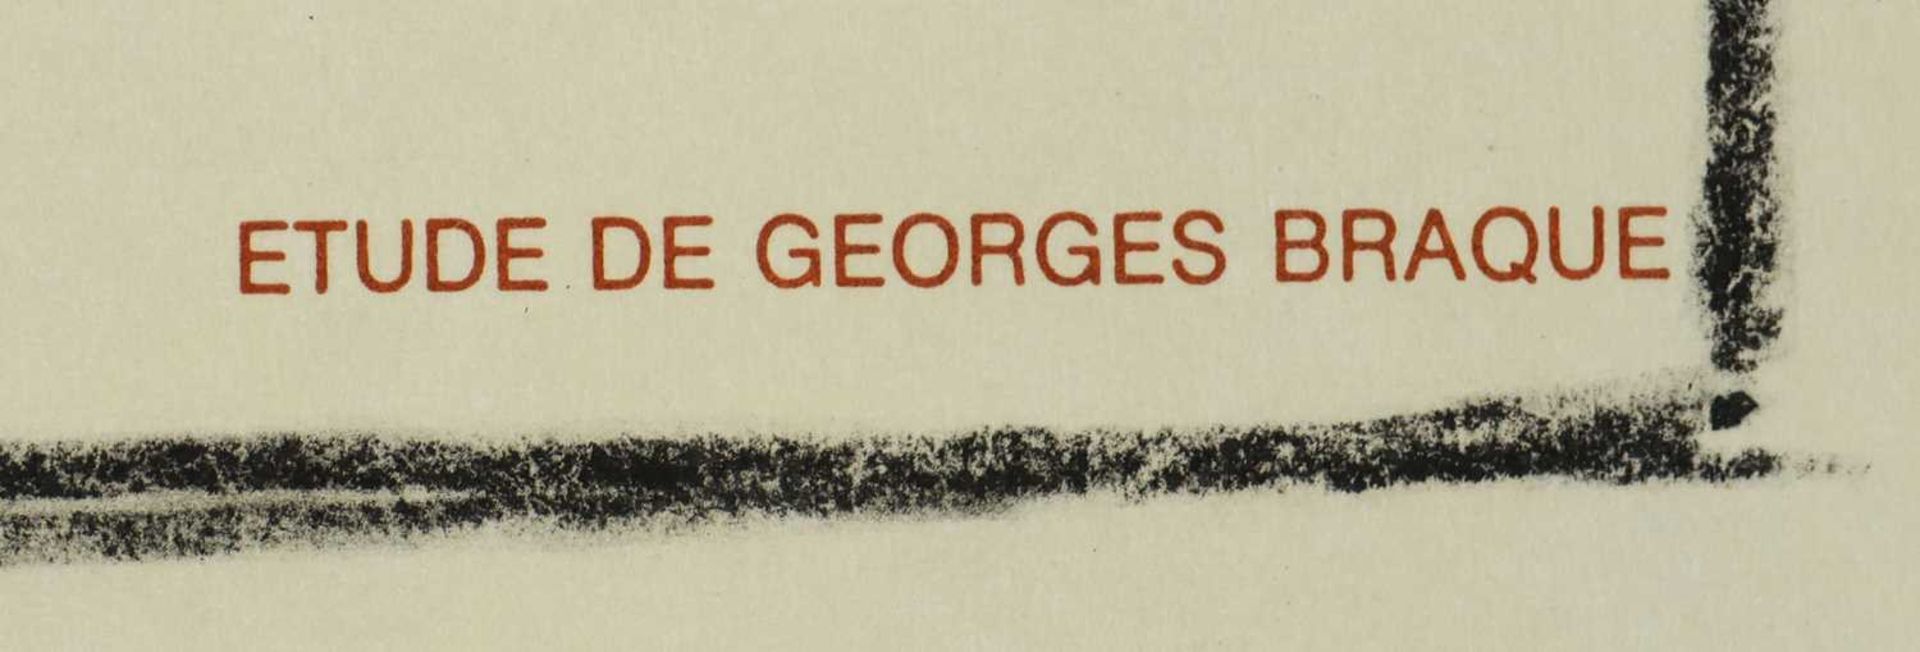 GEORGES BRAQUE (1882 Argenteuil - 1963 Paris) - Image 3 of 4